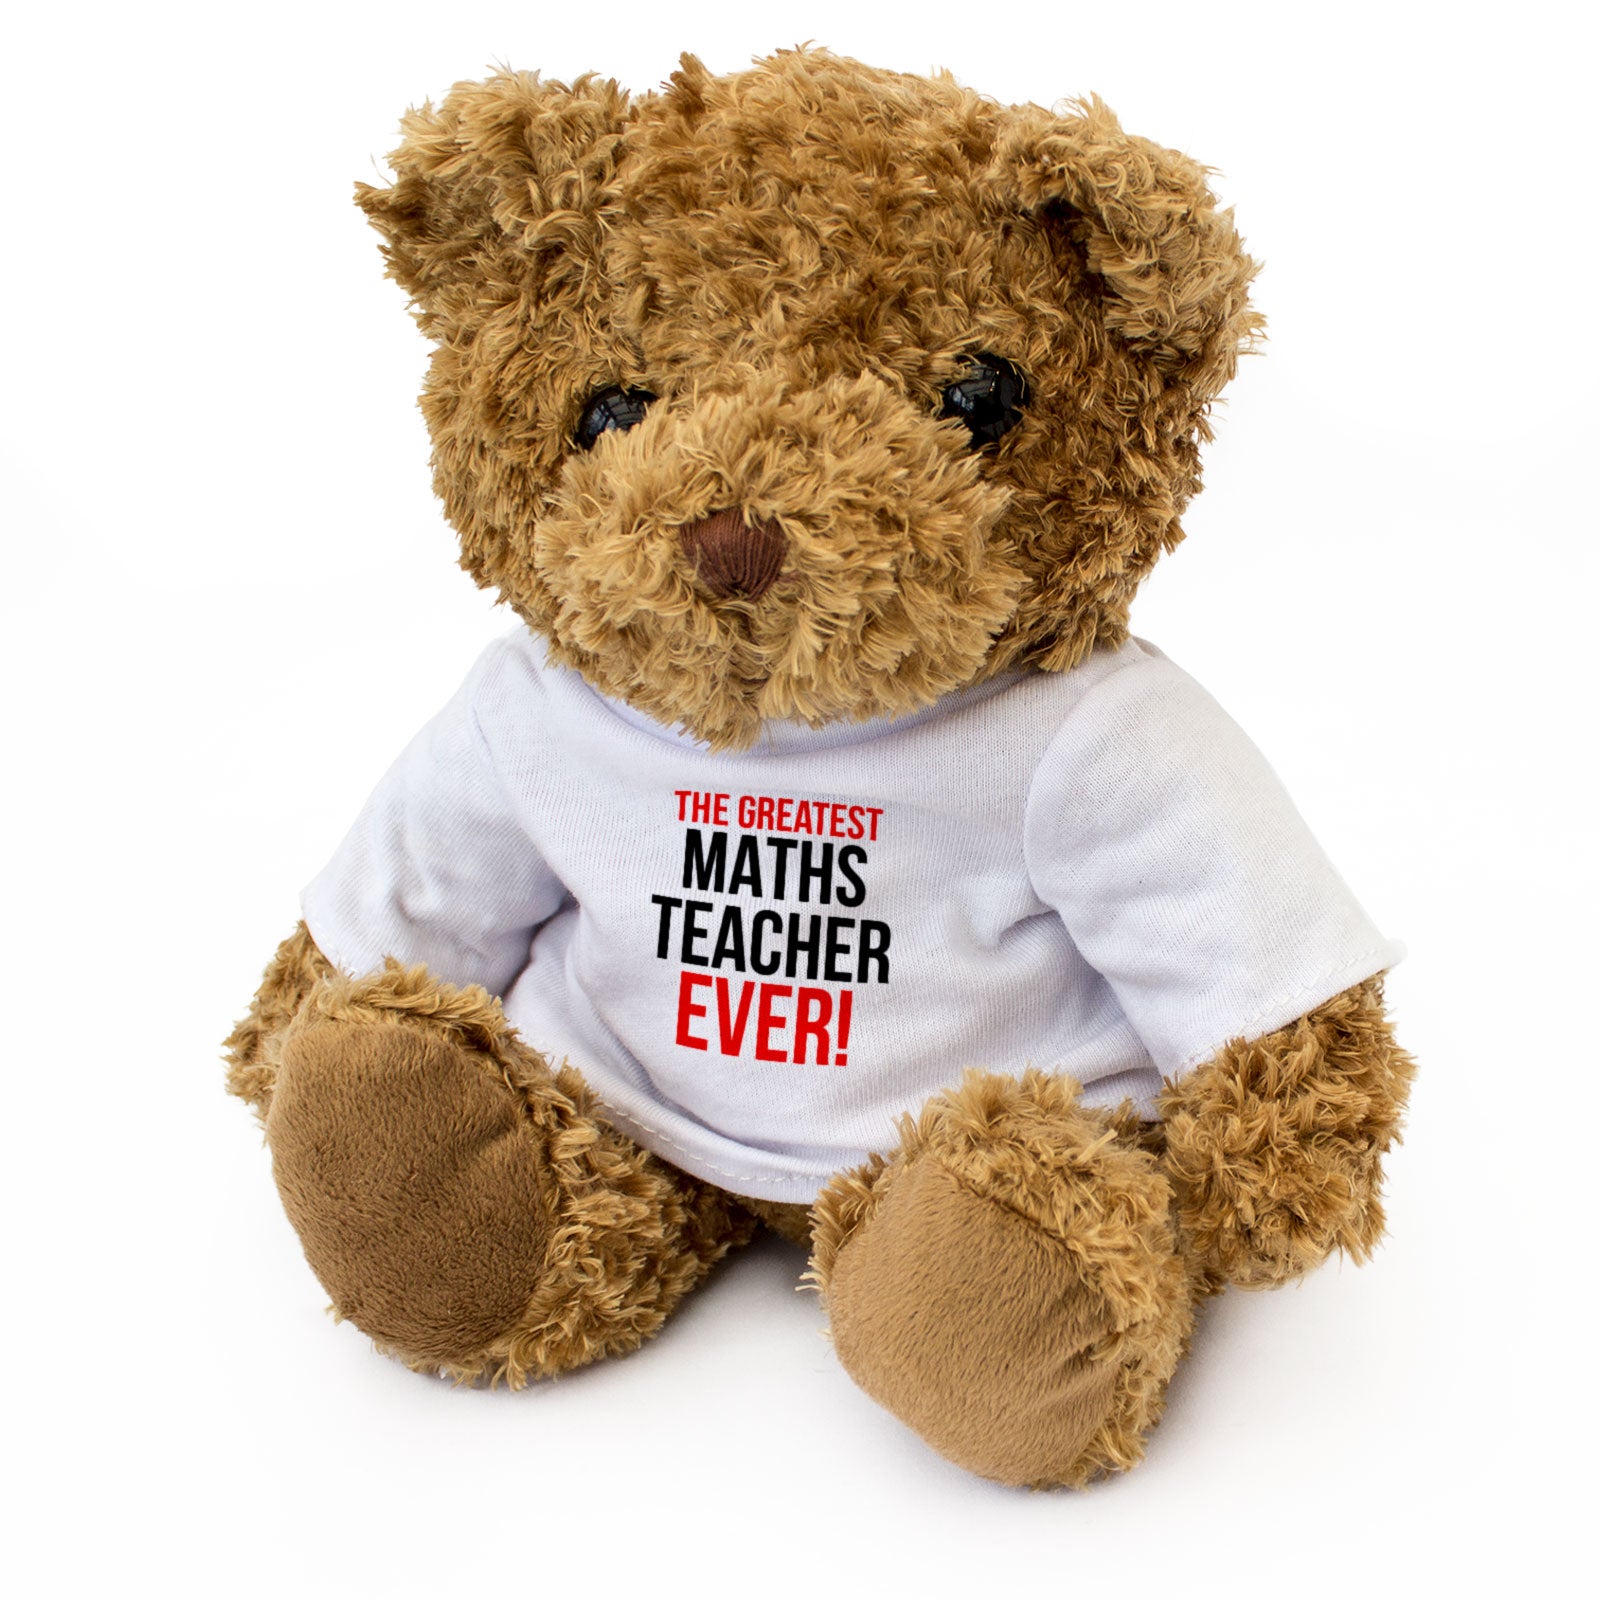 The Greatest Maths Teacher Ever - Teddy Bear